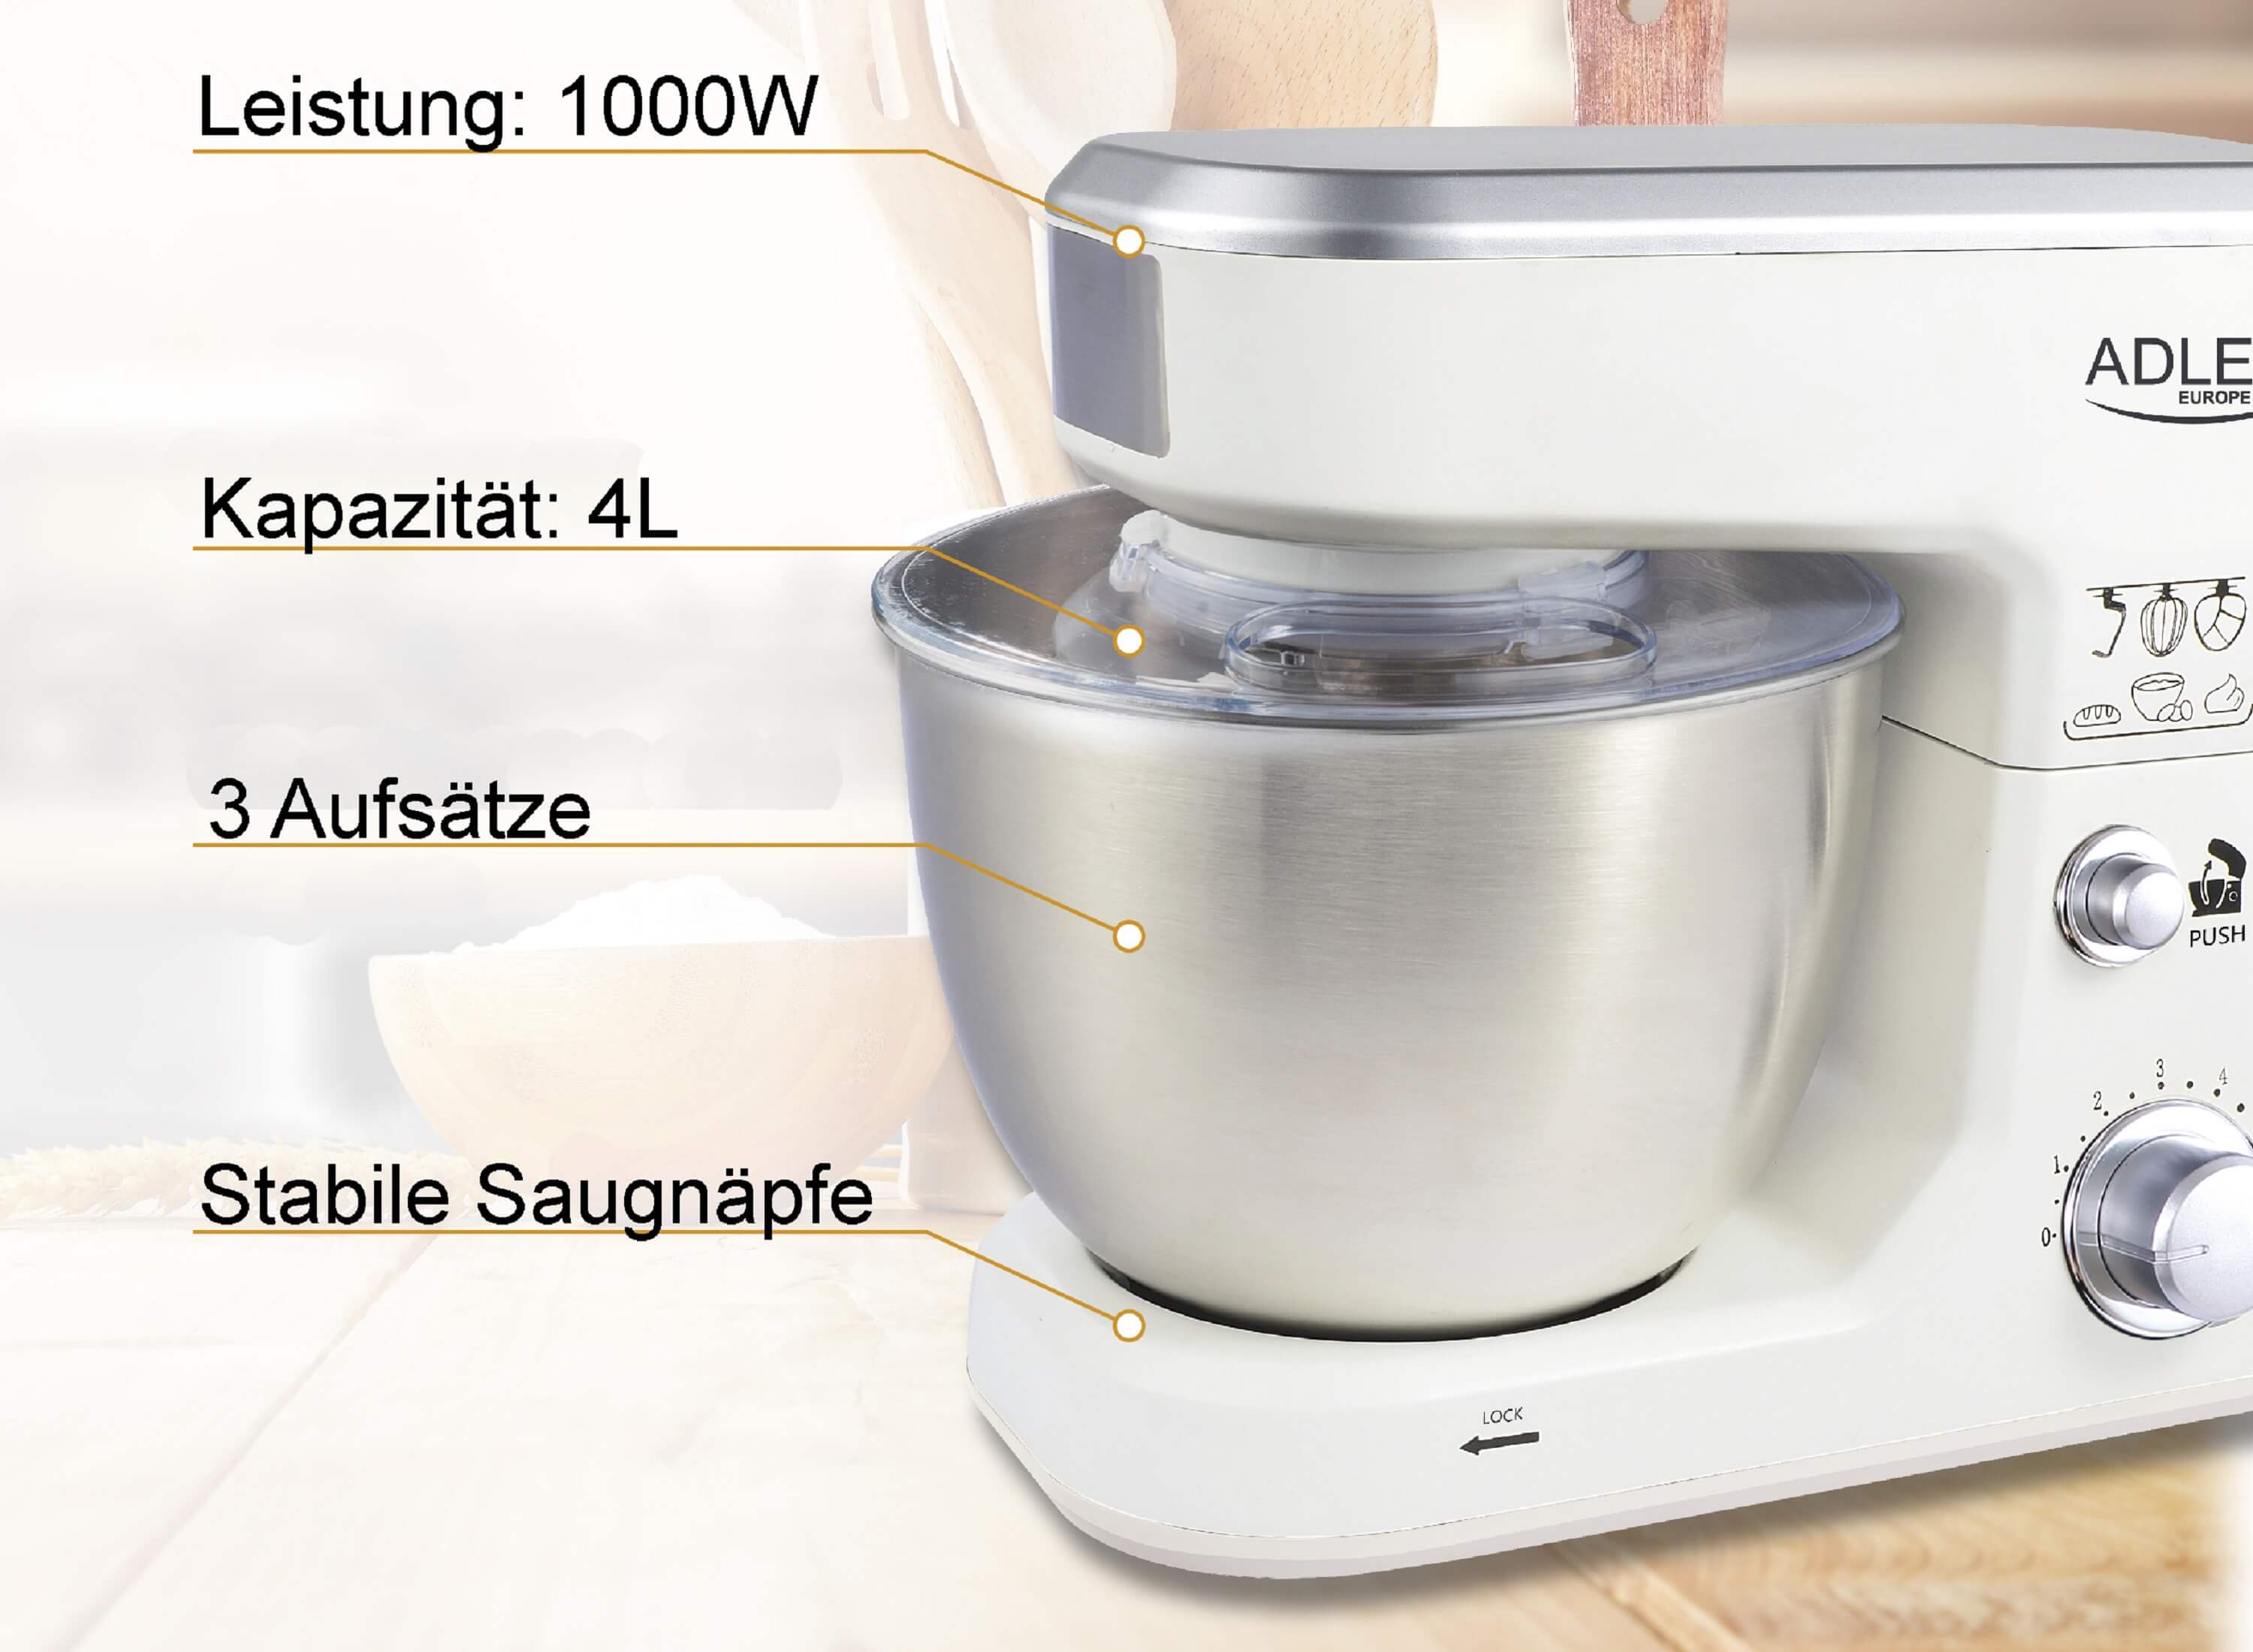 4 Watt) 1000 Liter, AD-4216 EUROPE (Rührschüsselkapazität: Küchenmaschine Weiß ADLER